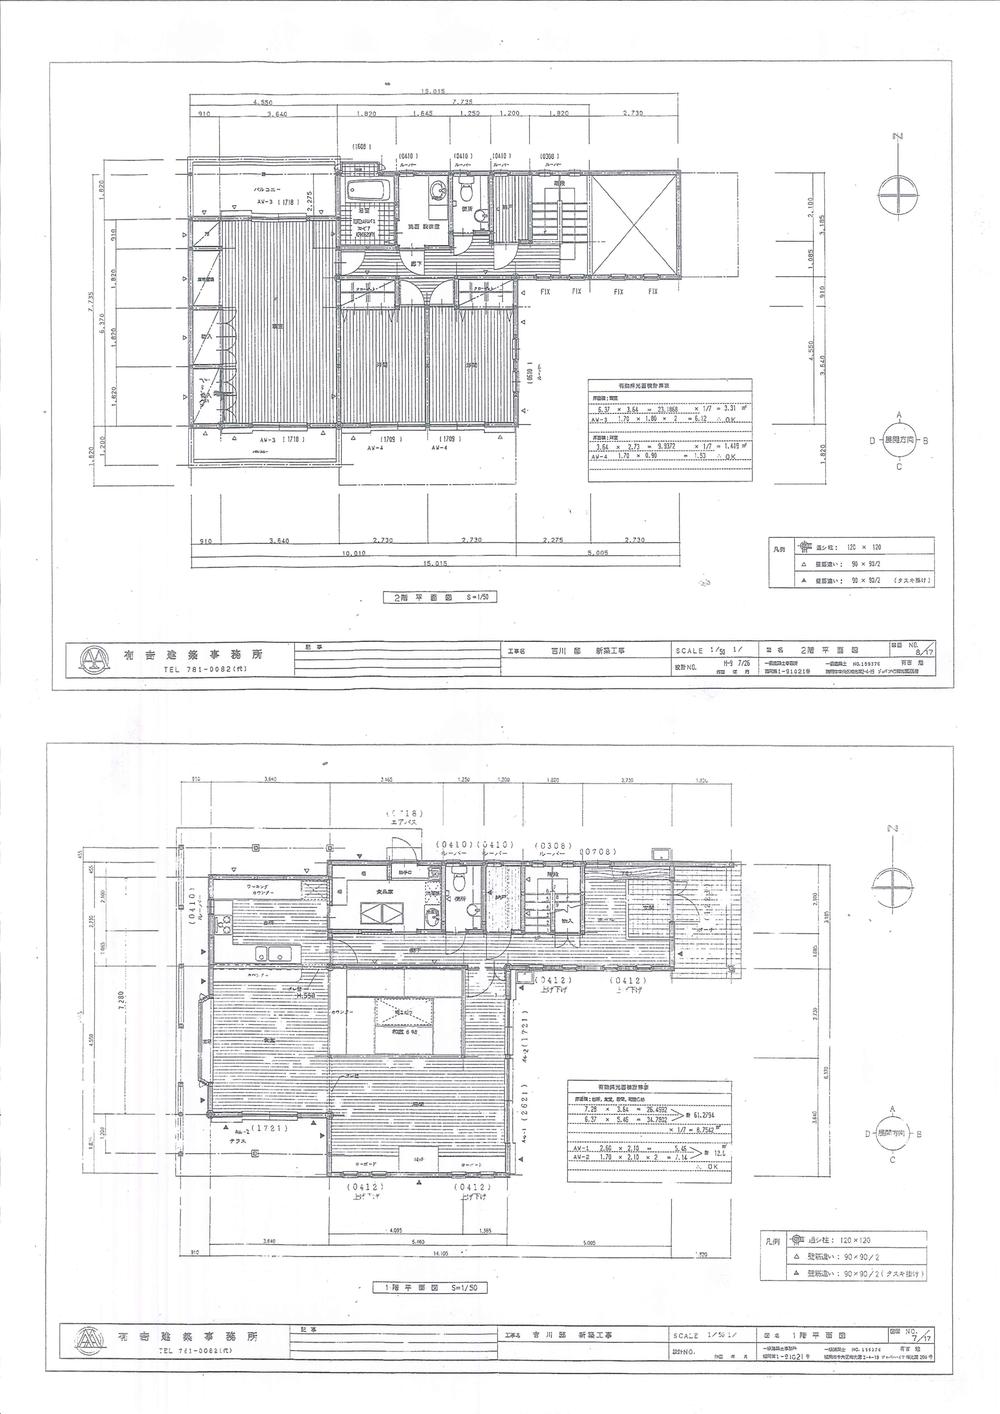 Floor plan. 95 million yen, 4LDK + S (storeroom), Land area 616.1 sq m , Building area 171.41 sq m 1 floor and second floor